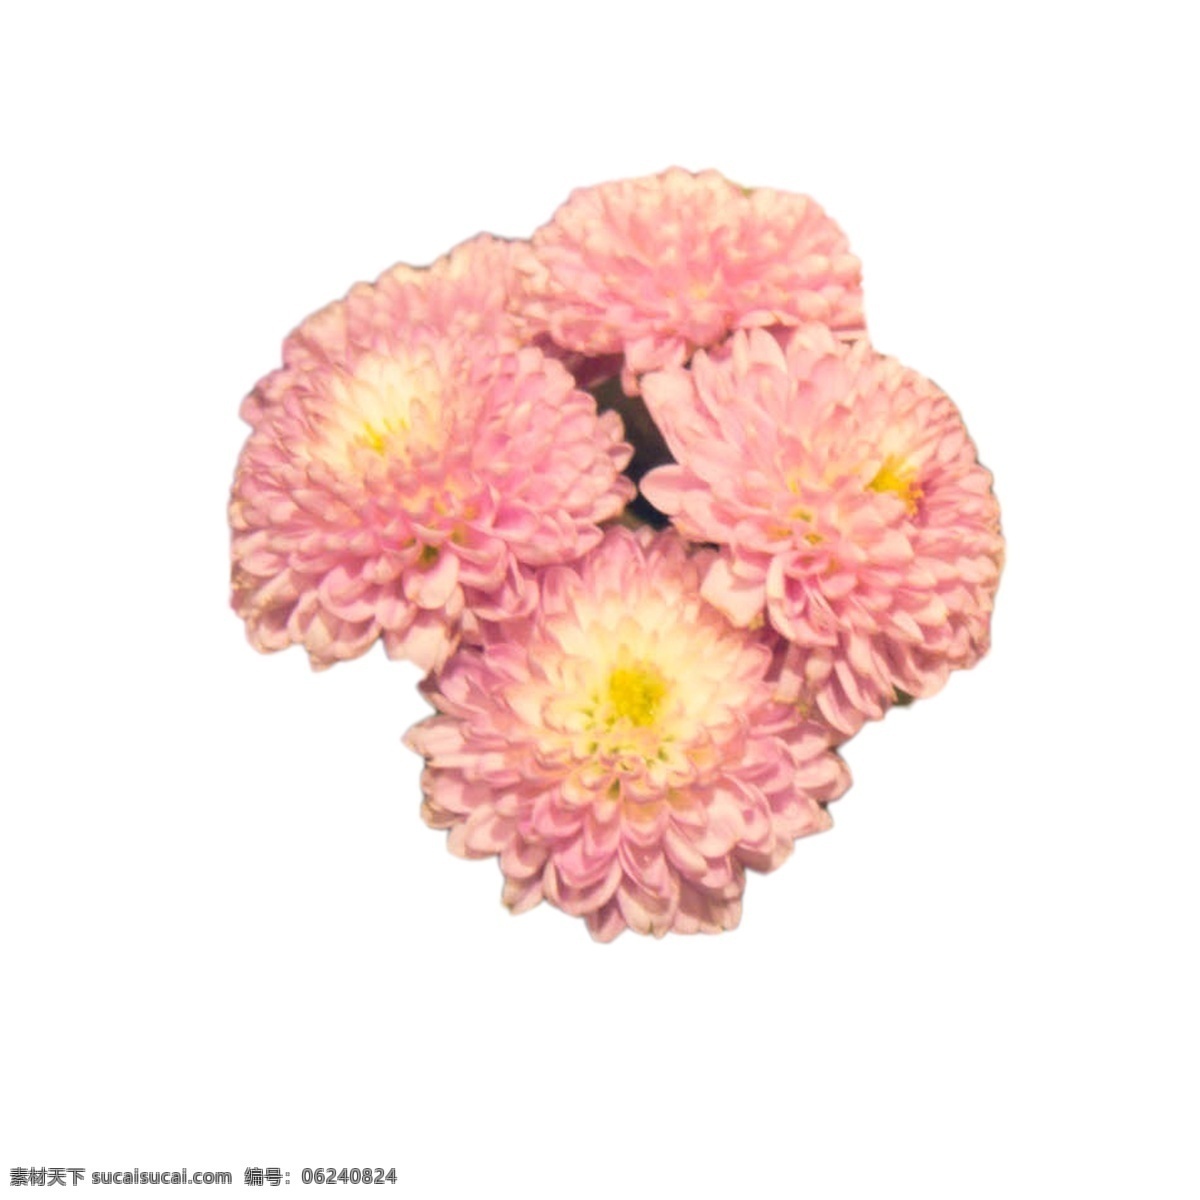 粉色 鲜花 实物 粉色花朵 美丽鲜花 鲜花花蕊 美丽花朵 卡通插图 创意卡通下载 插图 png图下载